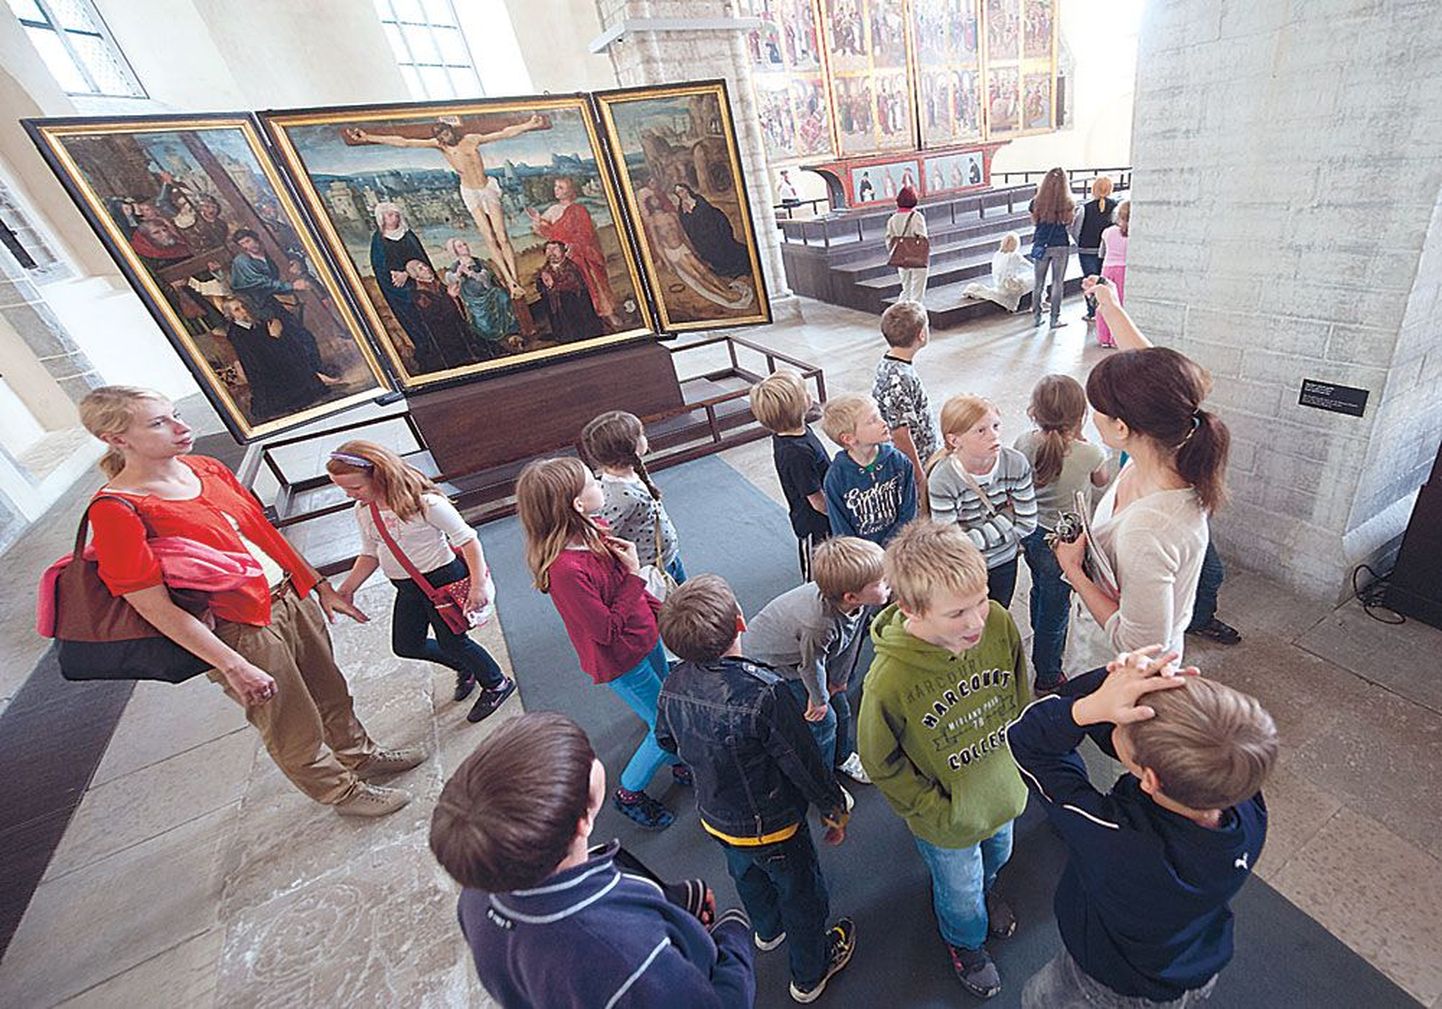 В музее Нигулисте с детьми доступным для них языком говорят об искусстве, истории, памяти, смерти, жизни и о многих других важных вещах.